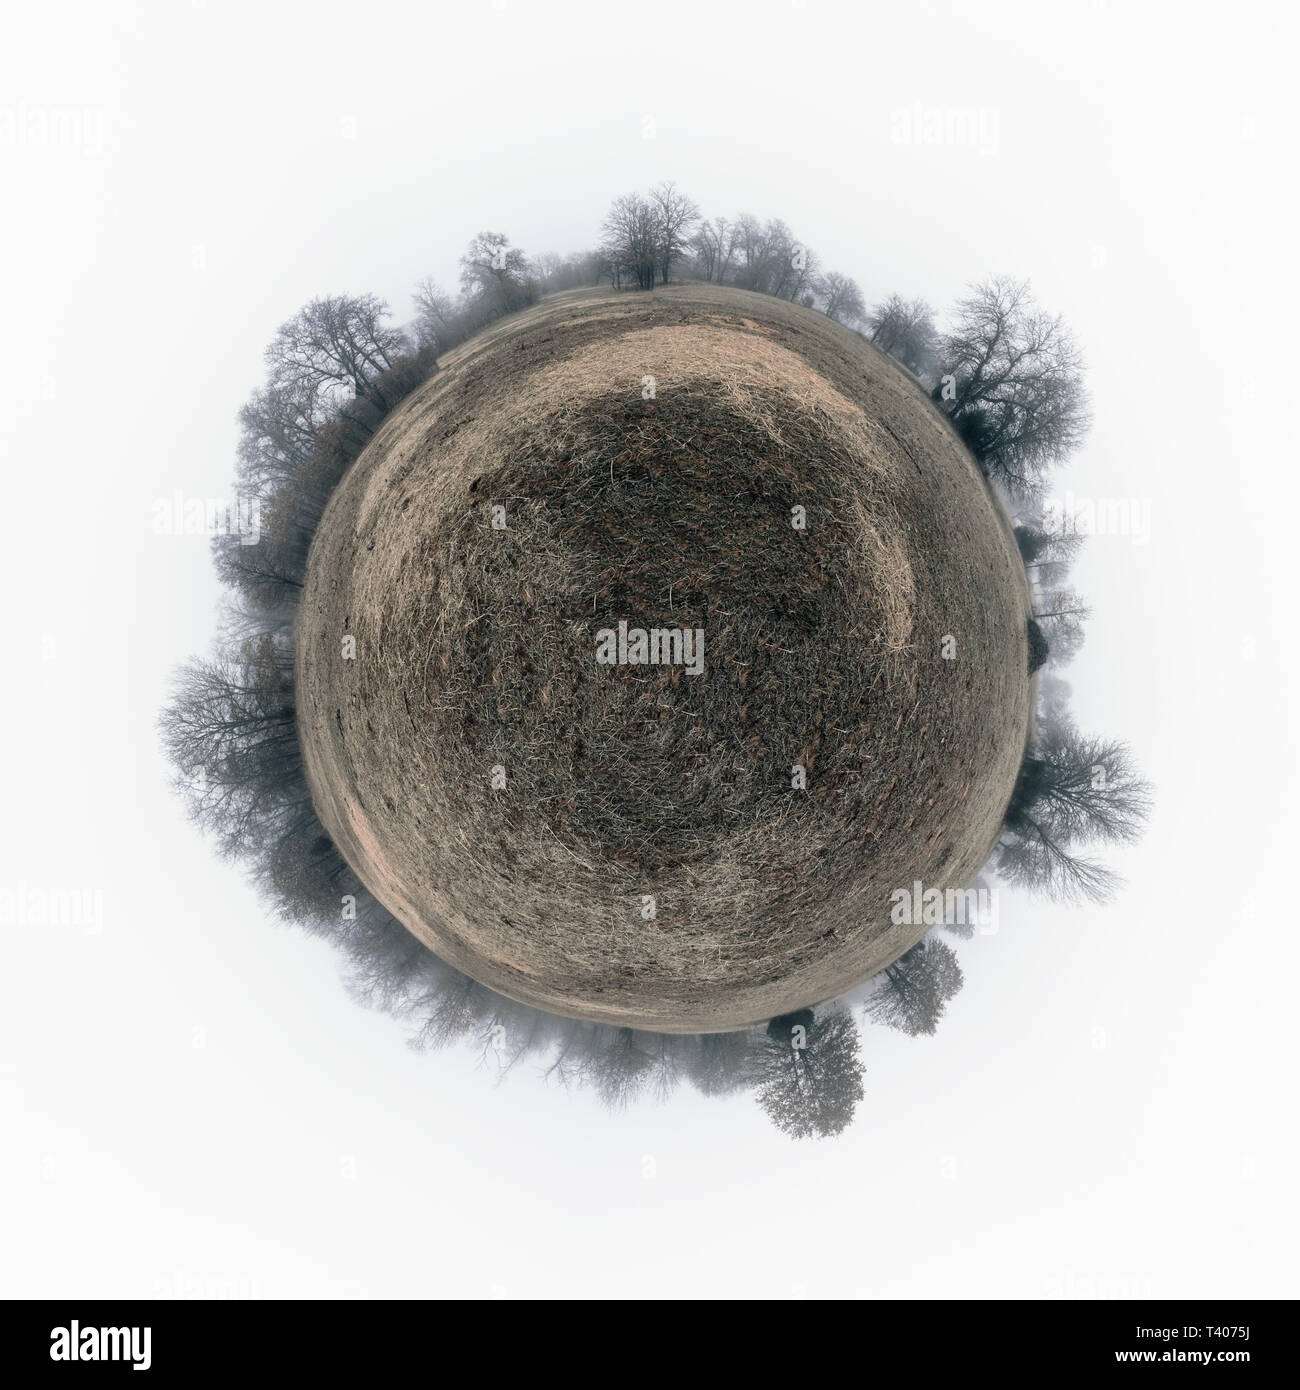 Panorama sferica di una squallida, cupo campo con erba secca, circondato da alberi sfrondato in pesante velatura; nozione di un triste e desolato pianeta Foto Stock